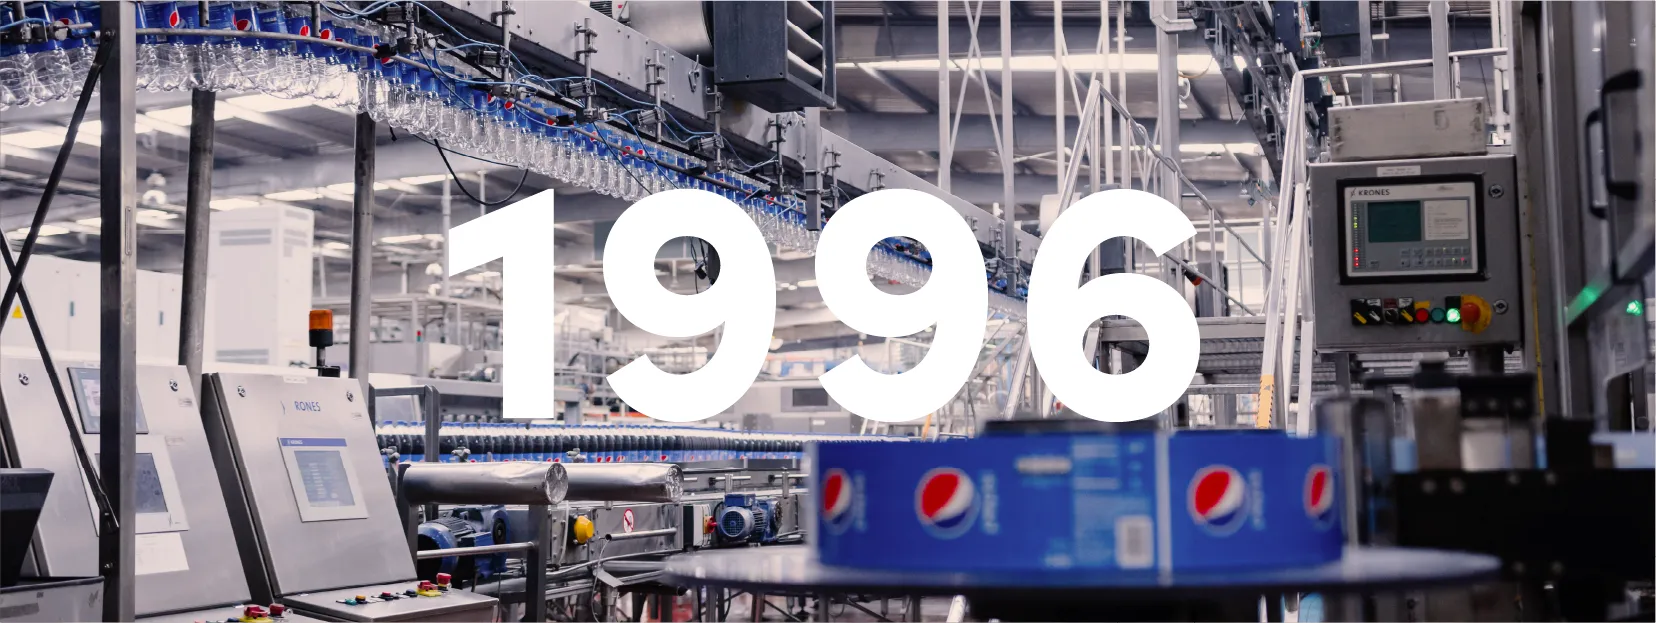 1996. Iniciamos la expansión internacional como Embotellador Ancla de PepsiCo.